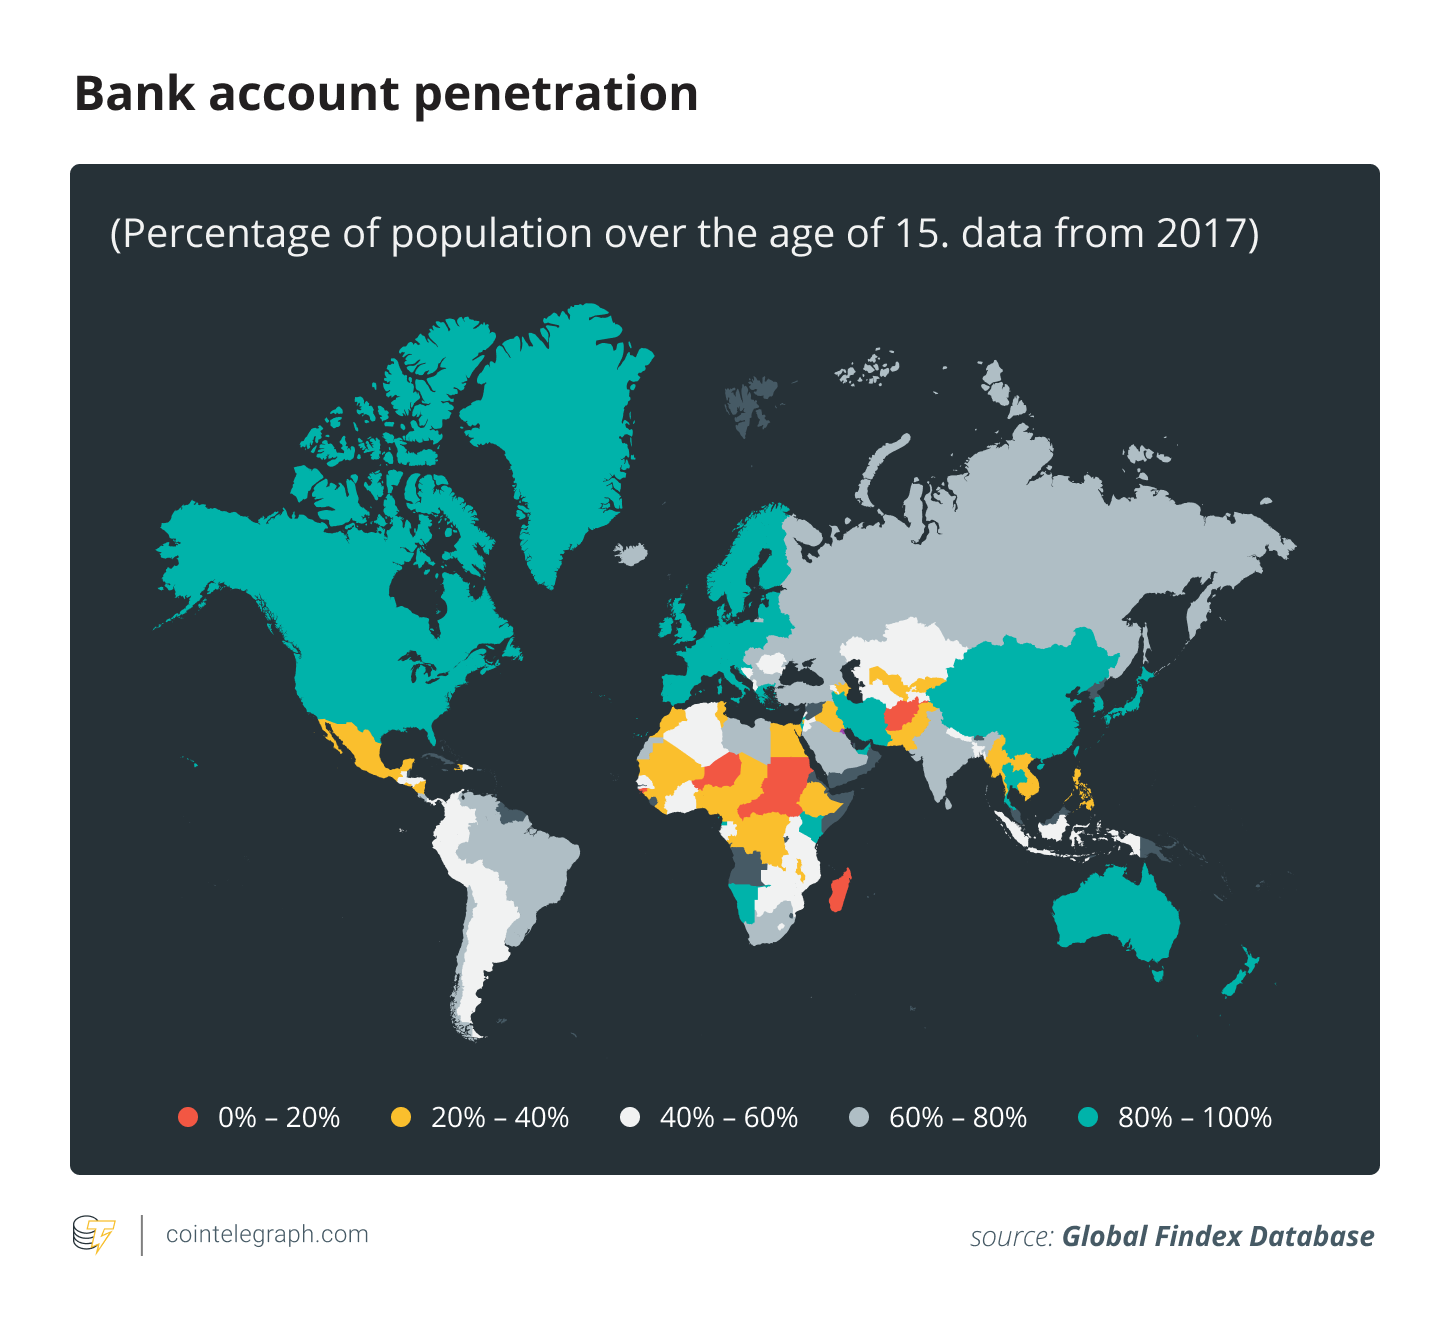 Bank account penetration